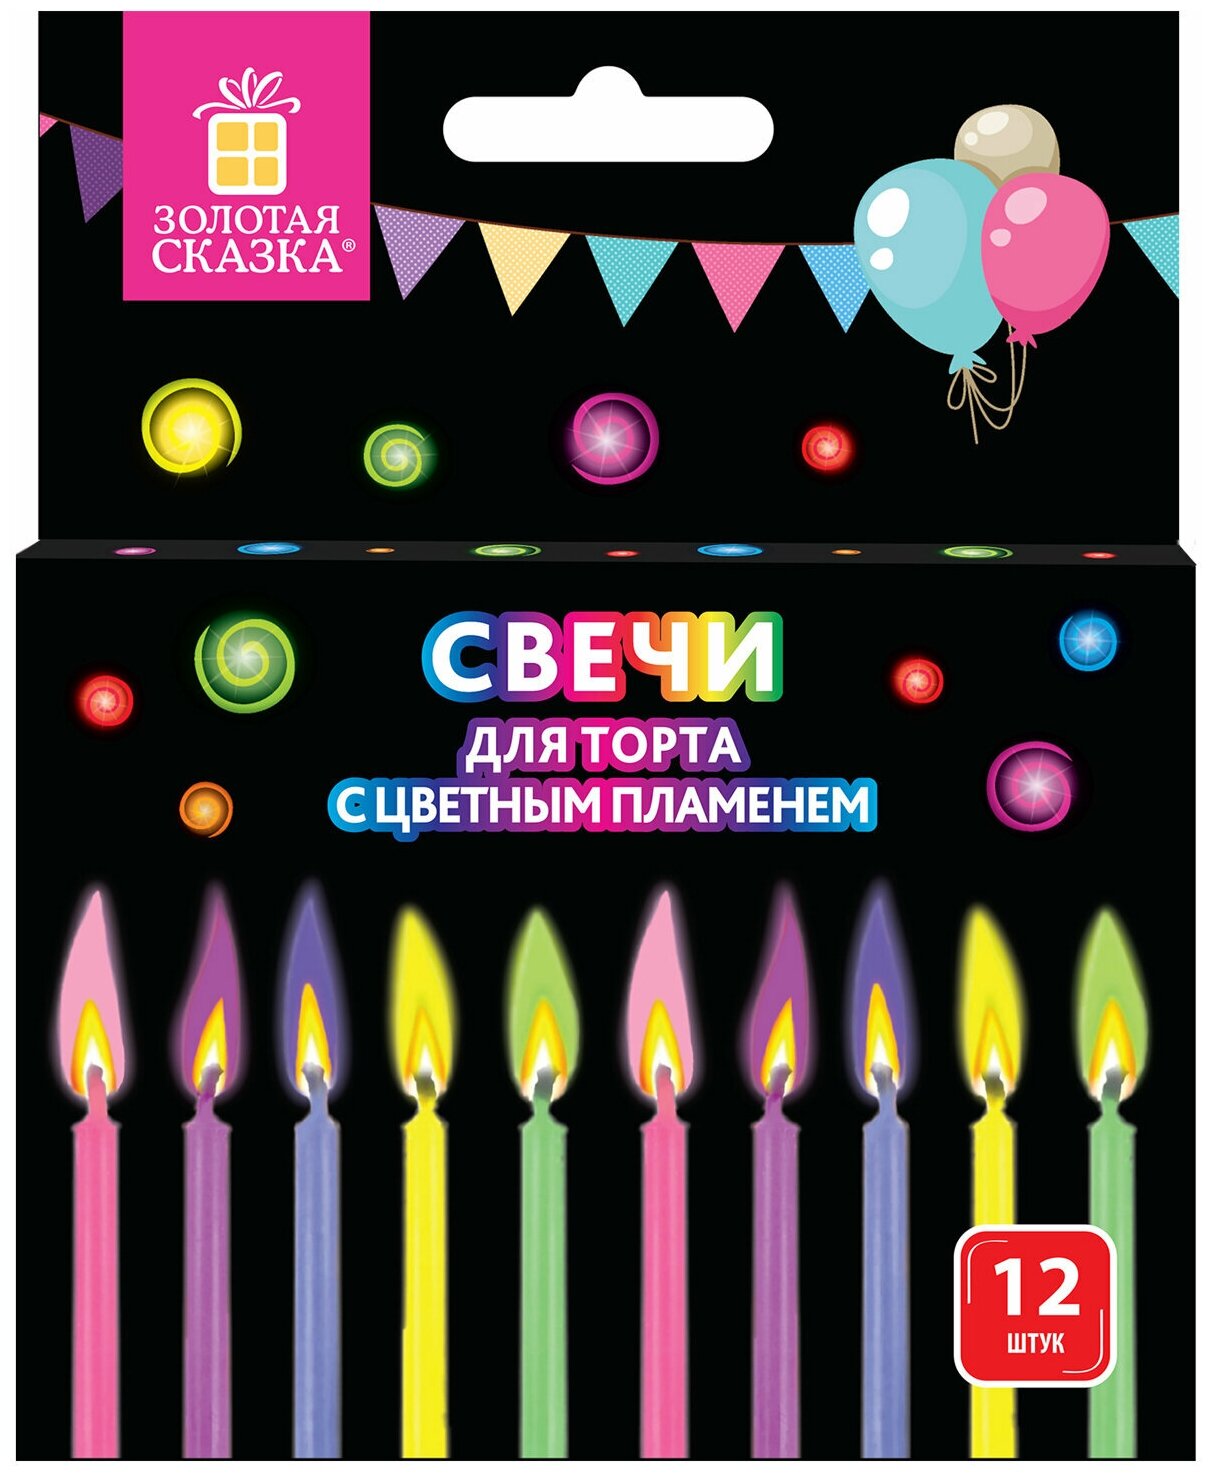 Набор свечей для торта с цветным пламенем 12 шт, 6 см, с держателями, золотая сказка, 591460 /Квант продажи 2 ед./